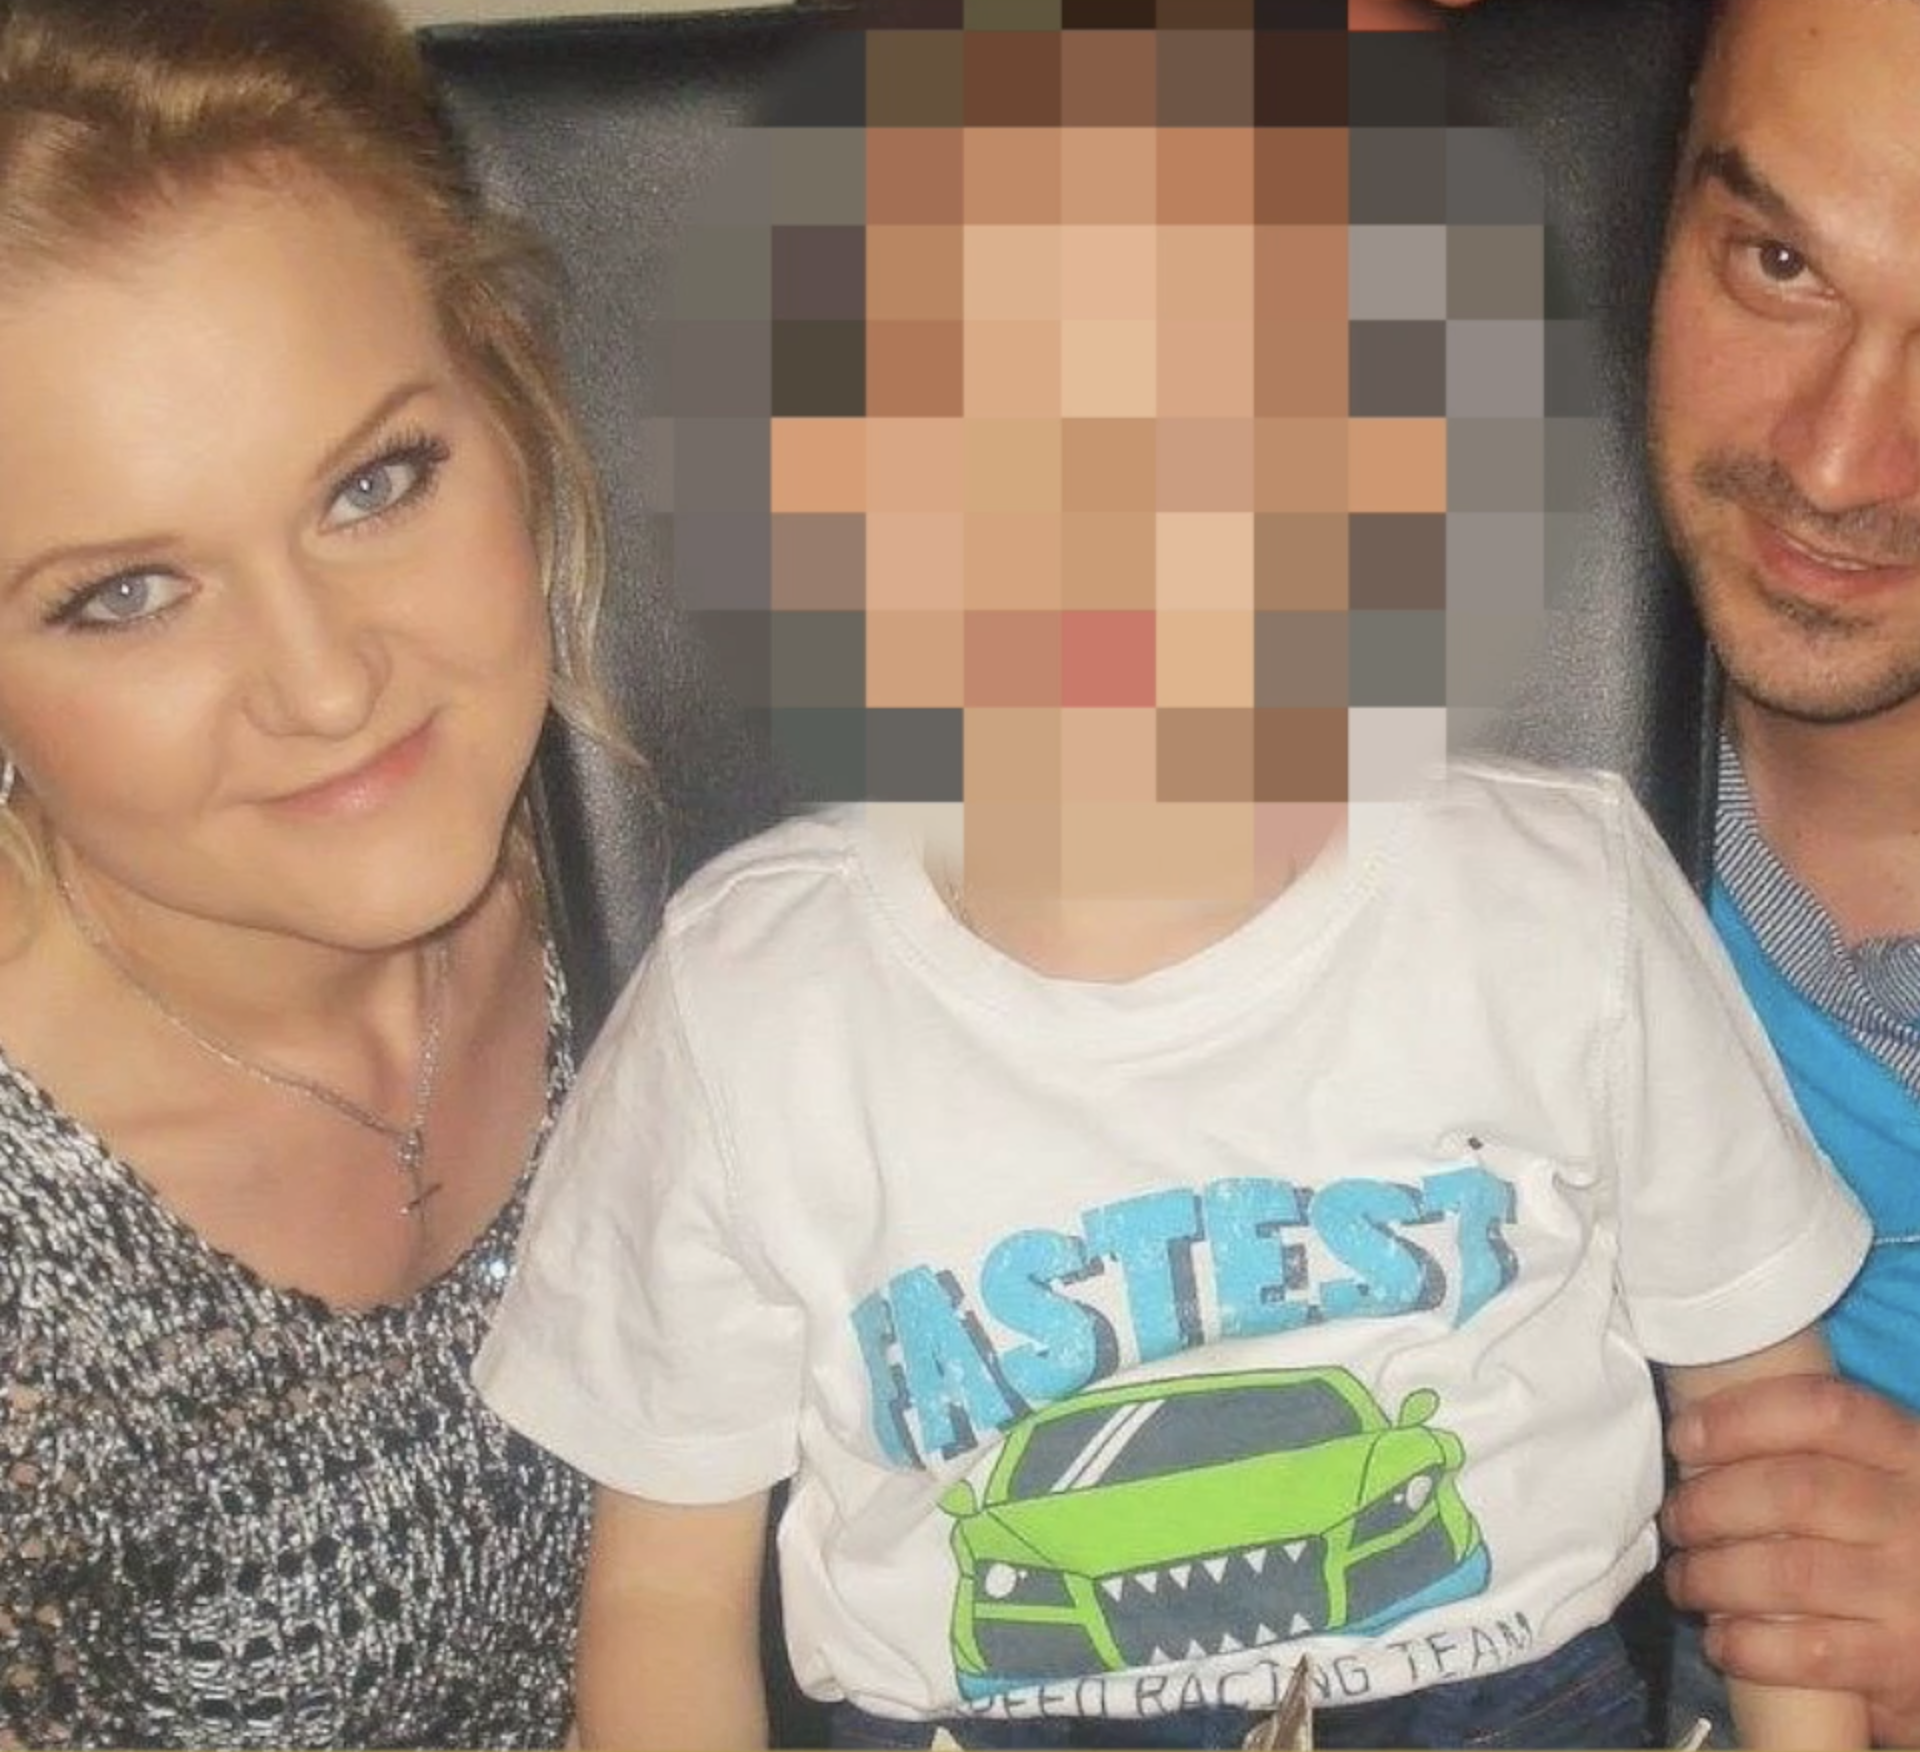 Brat ubojice iz Njemačke: Žalio mi se da pije lijekove i ne spava